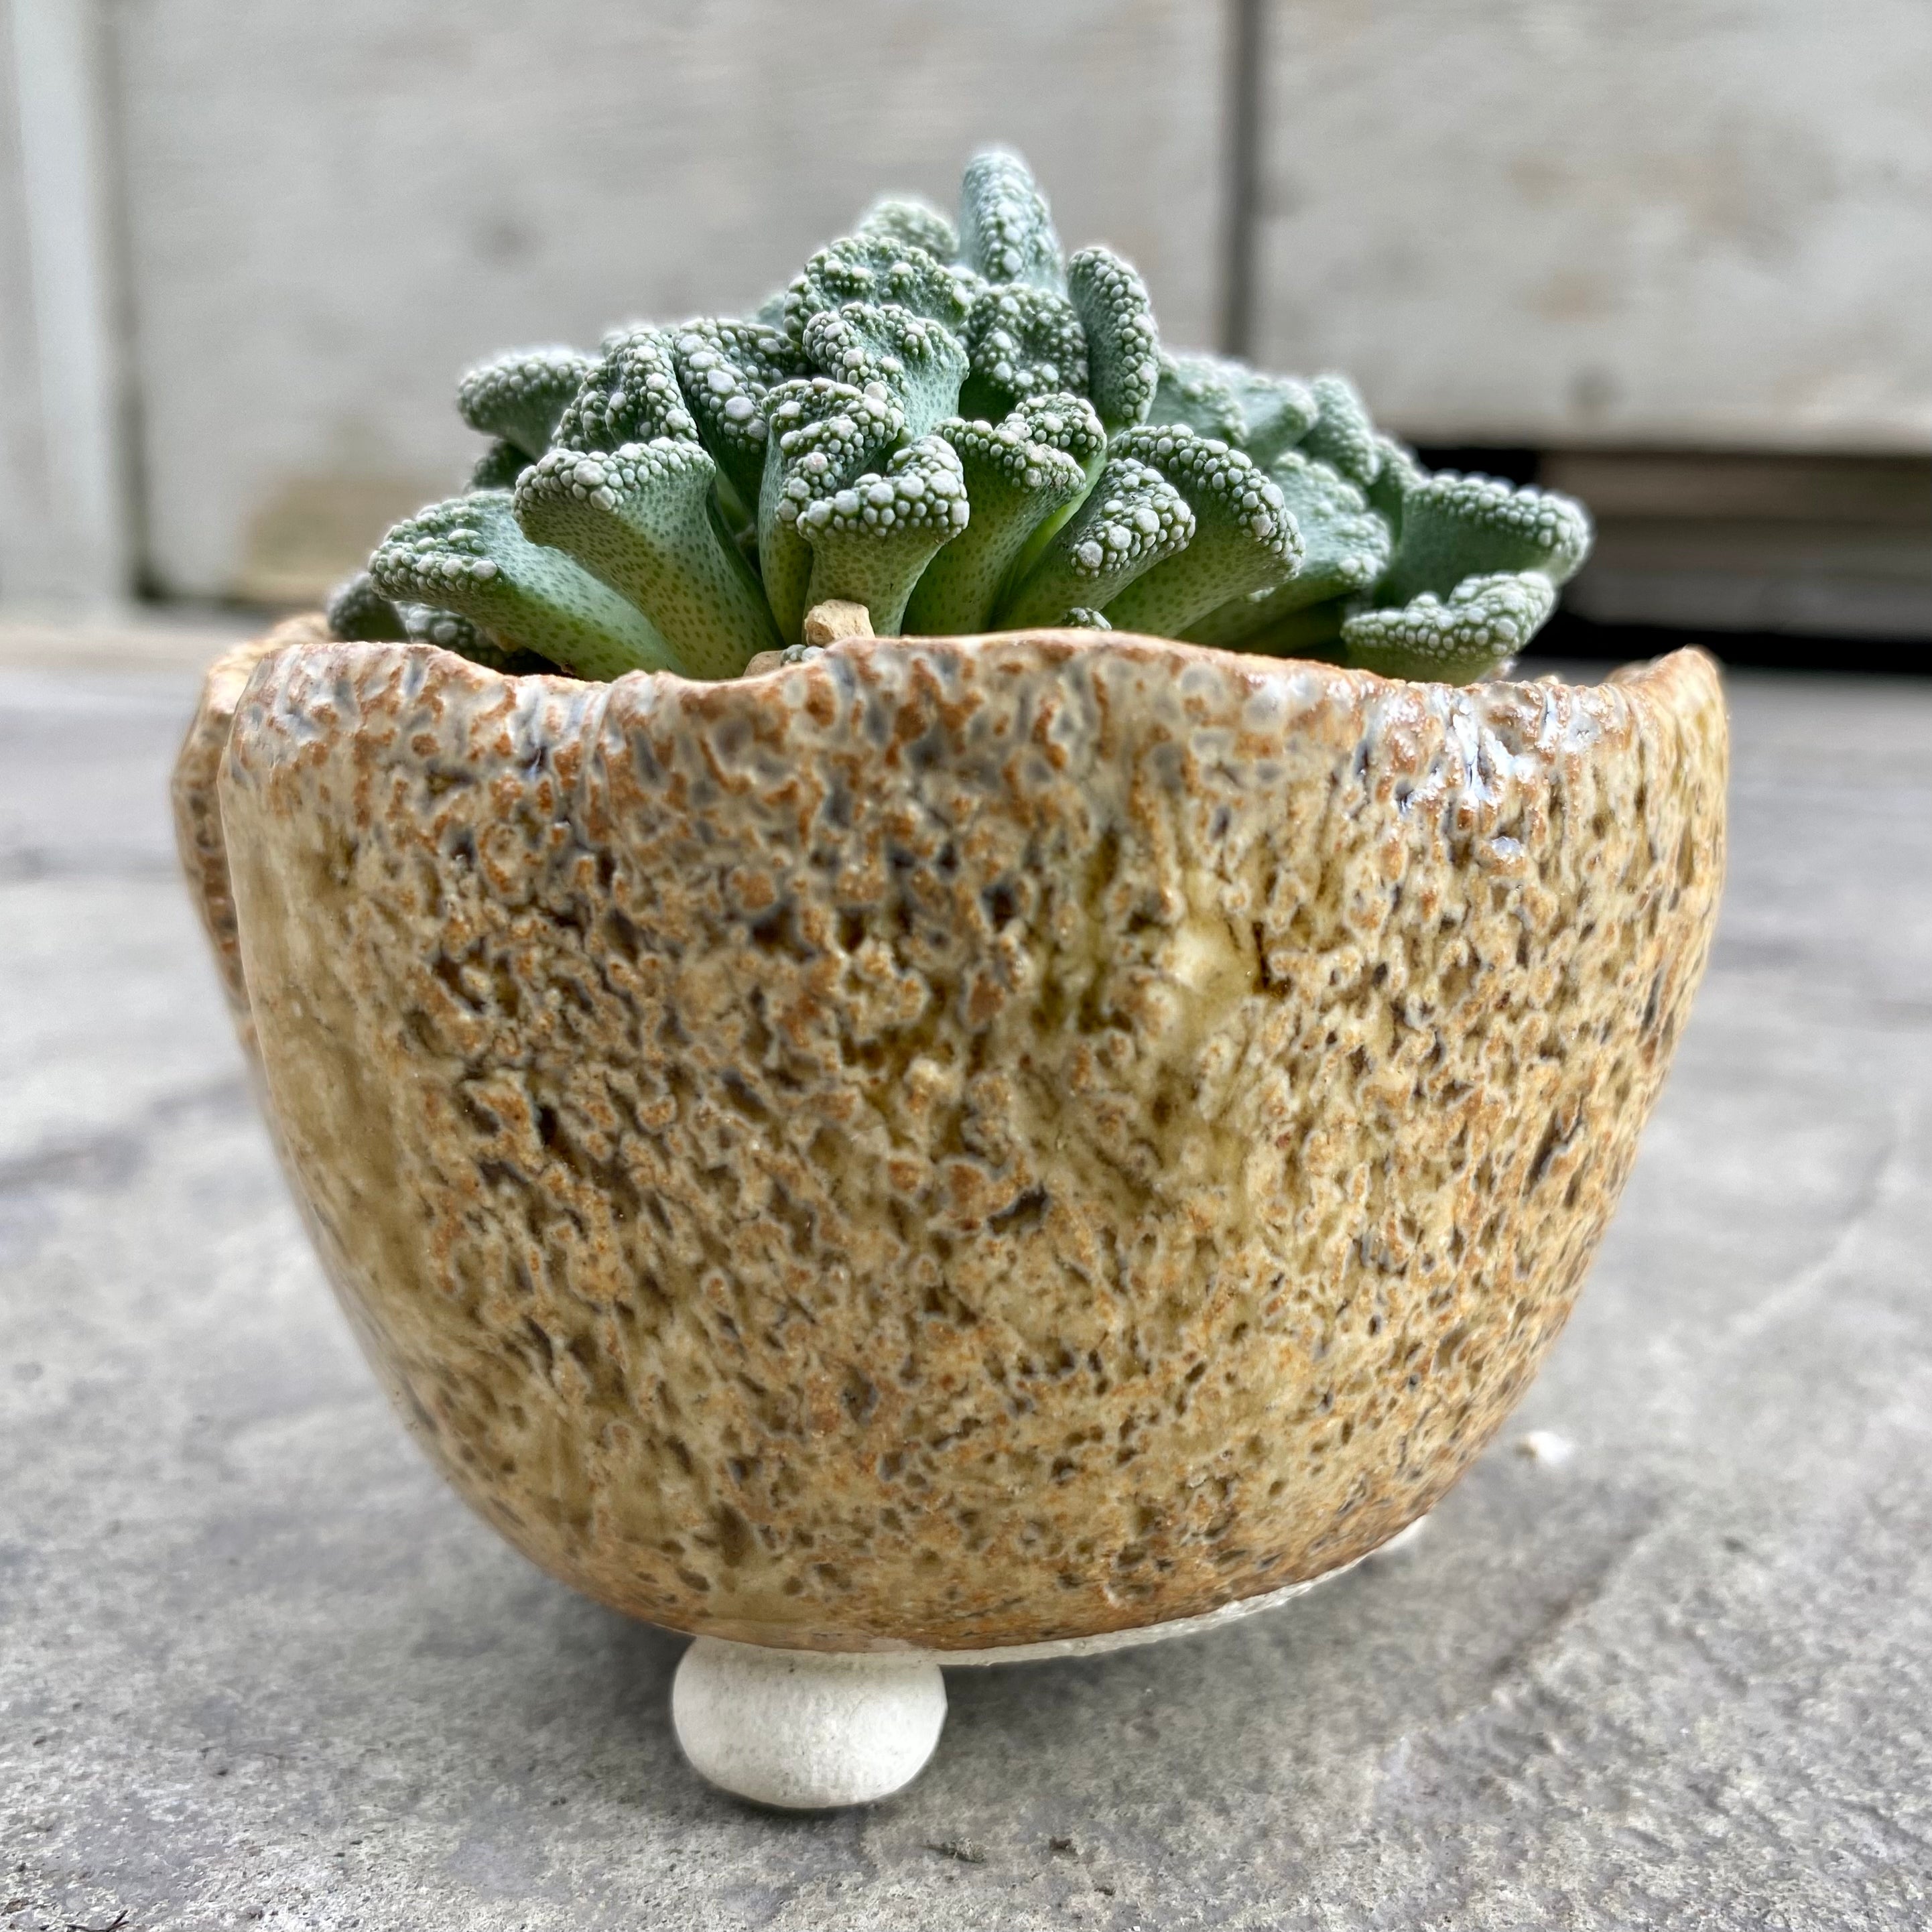 Titanopsis calcarea with decorative pot